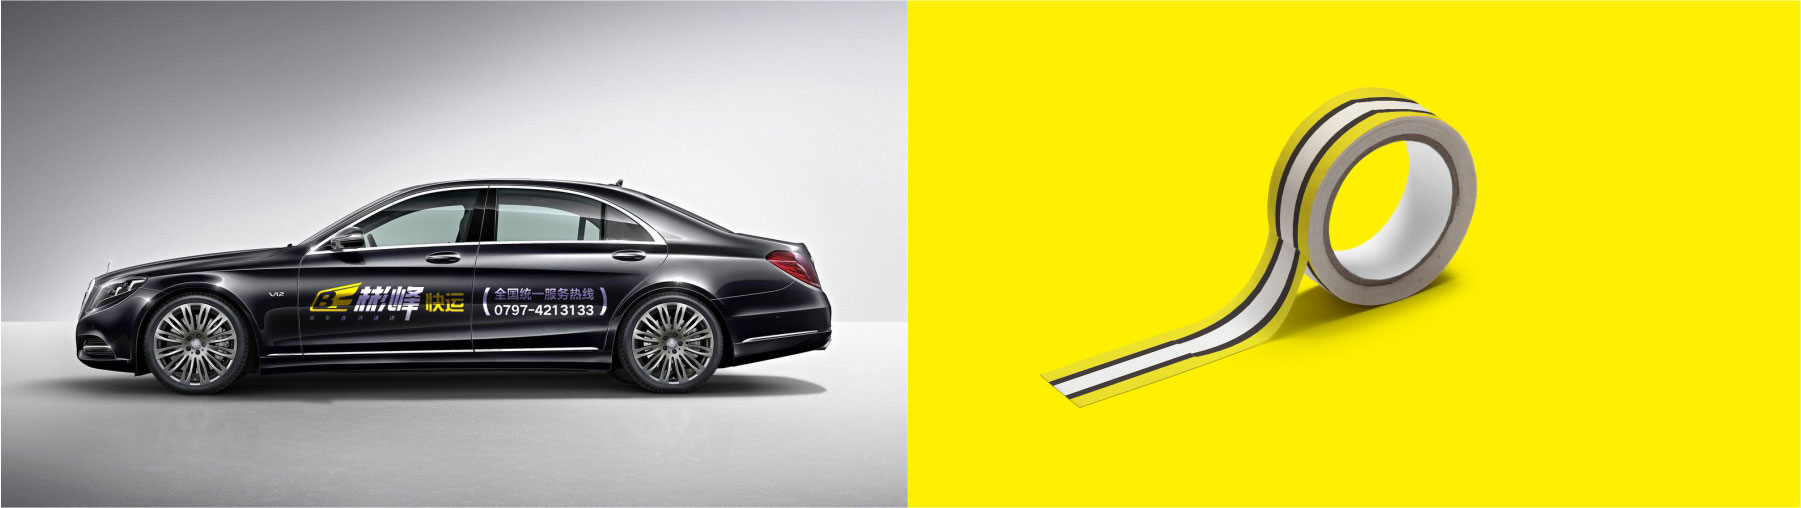 彬峰速递品牌全案设计汽车创意贴纸设计